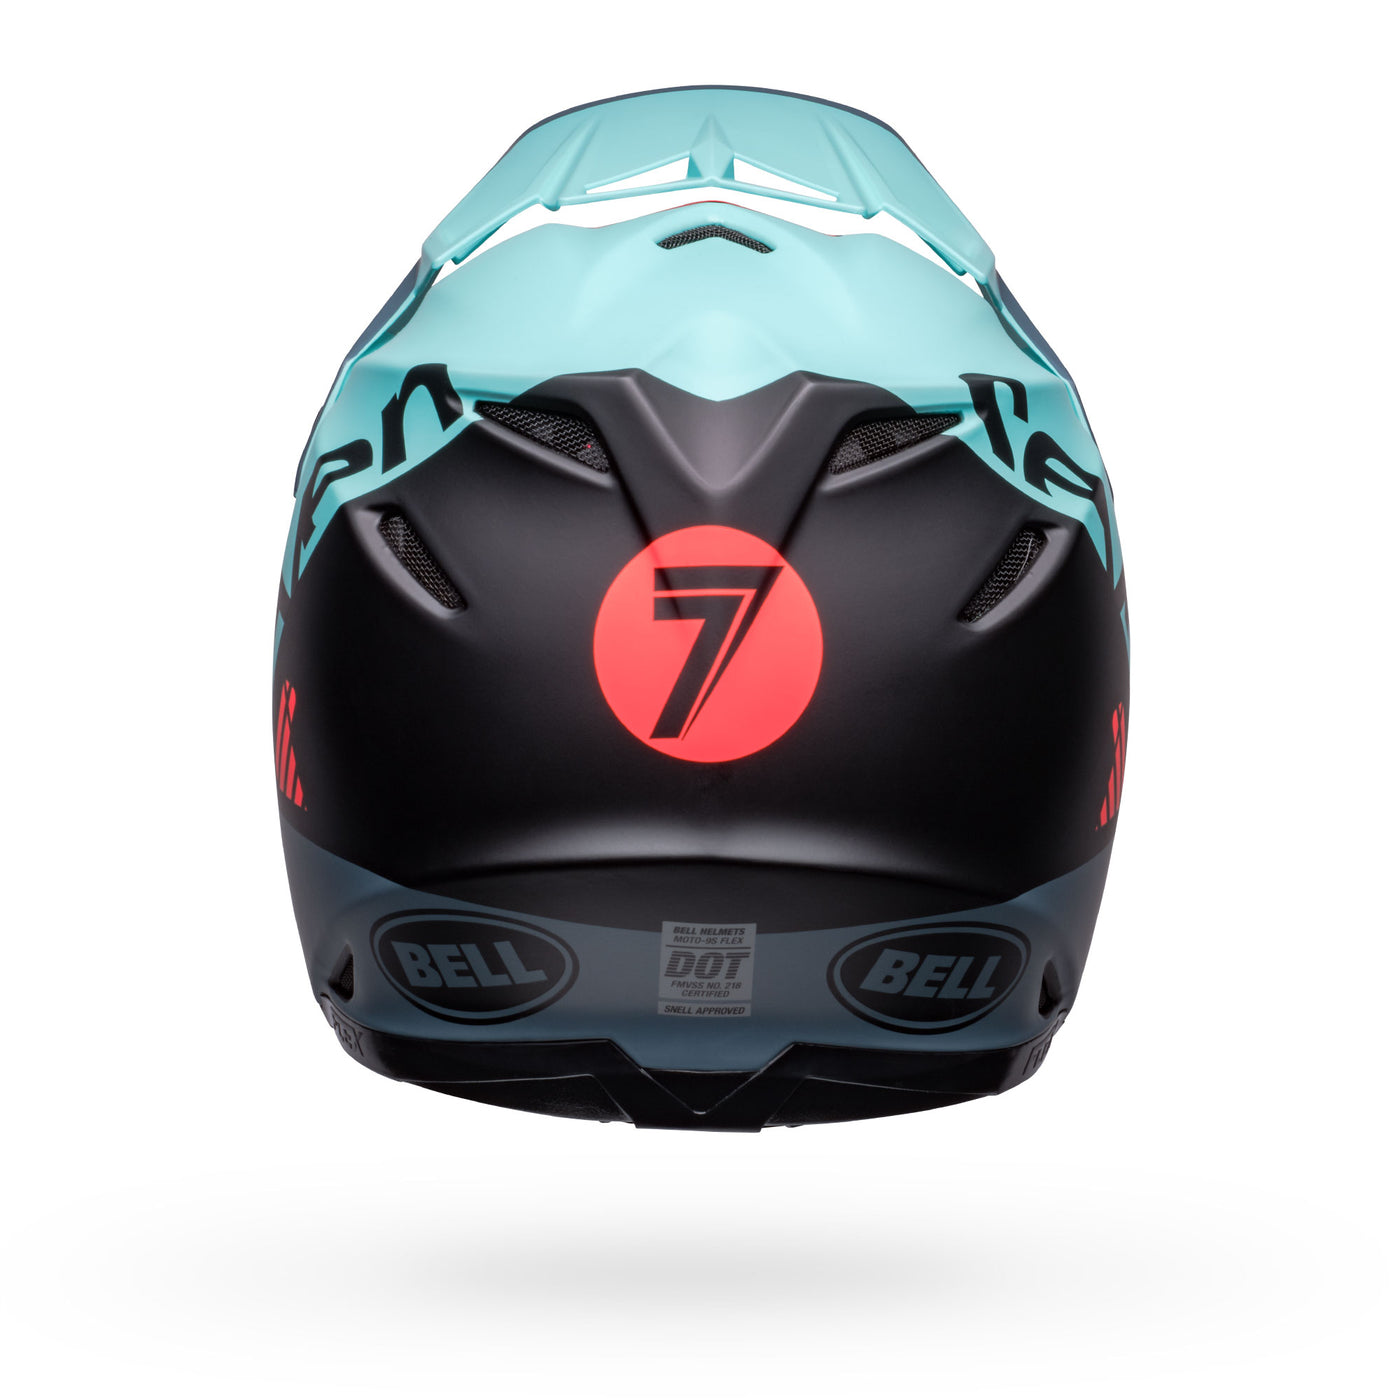 bell moto 9s flex dirt motorcycle helmet seven vanguard matte aqua black back